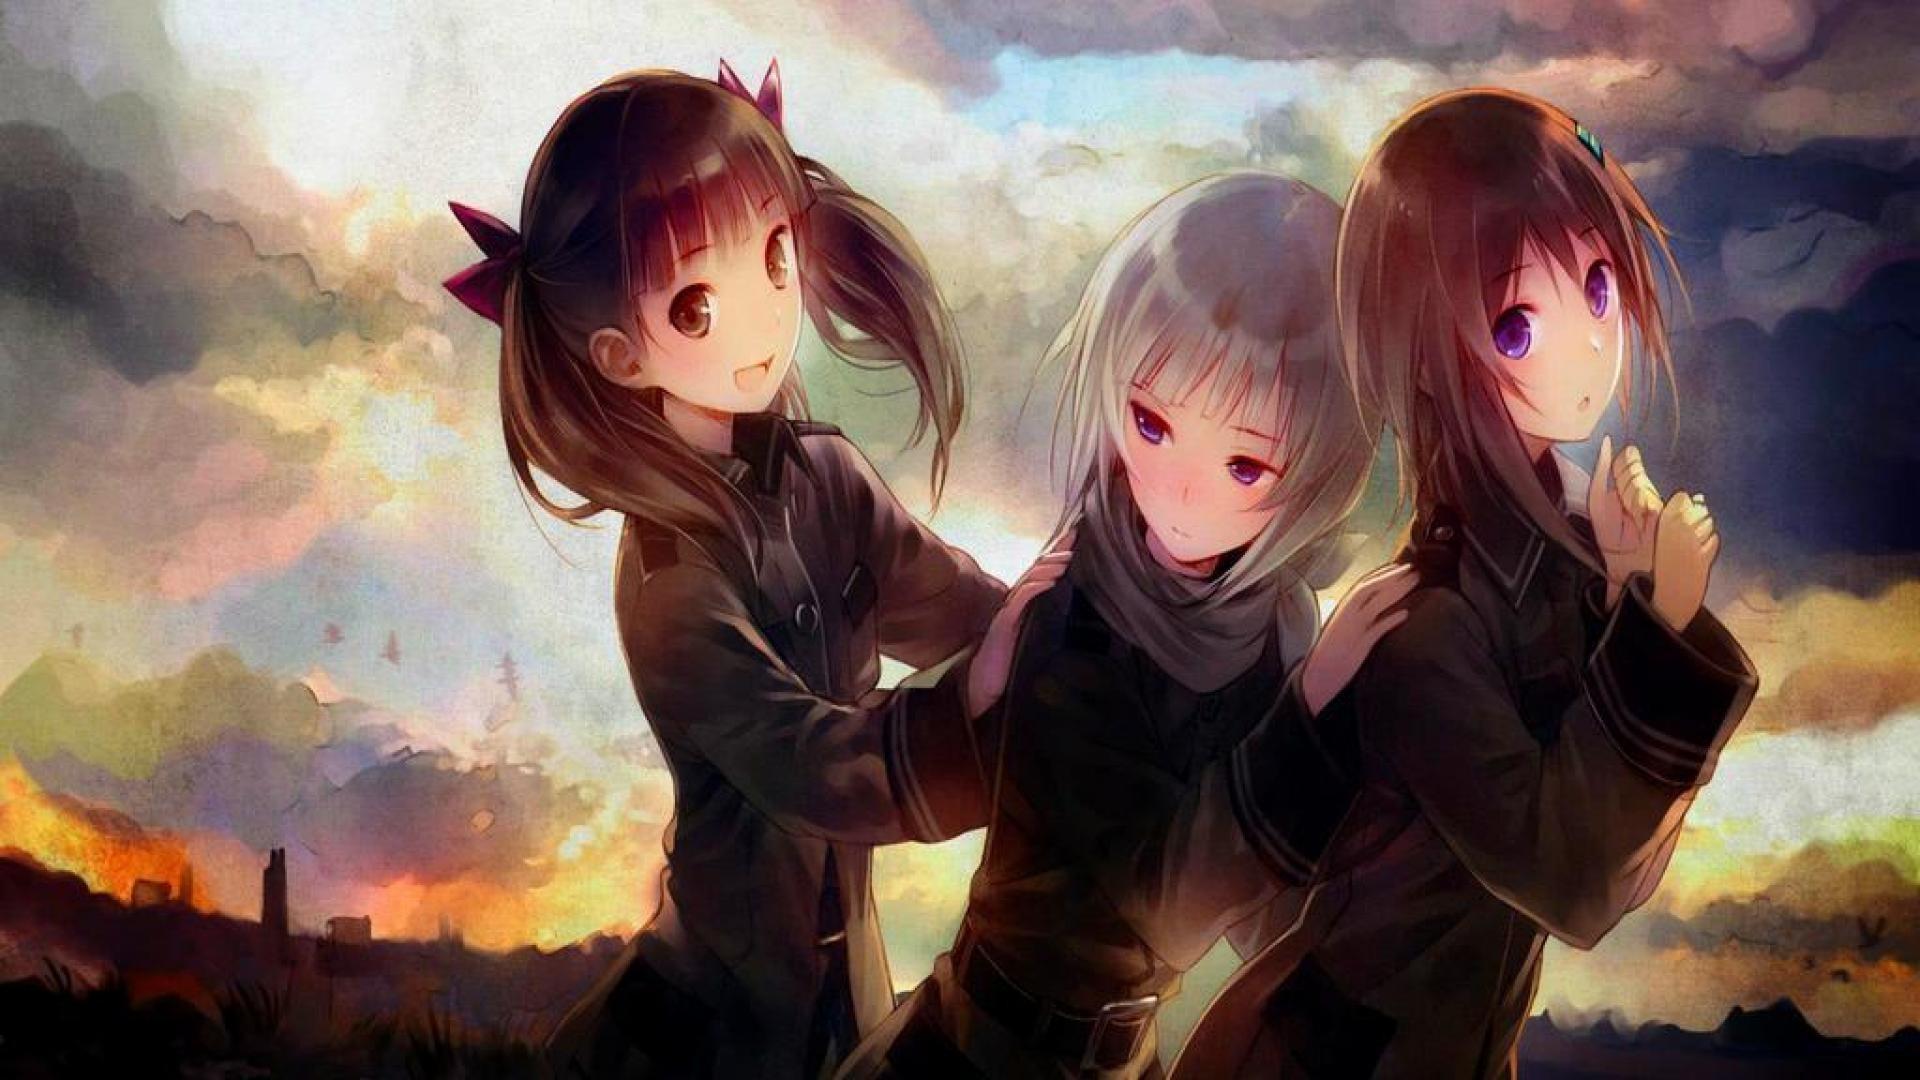 anime friendship forever